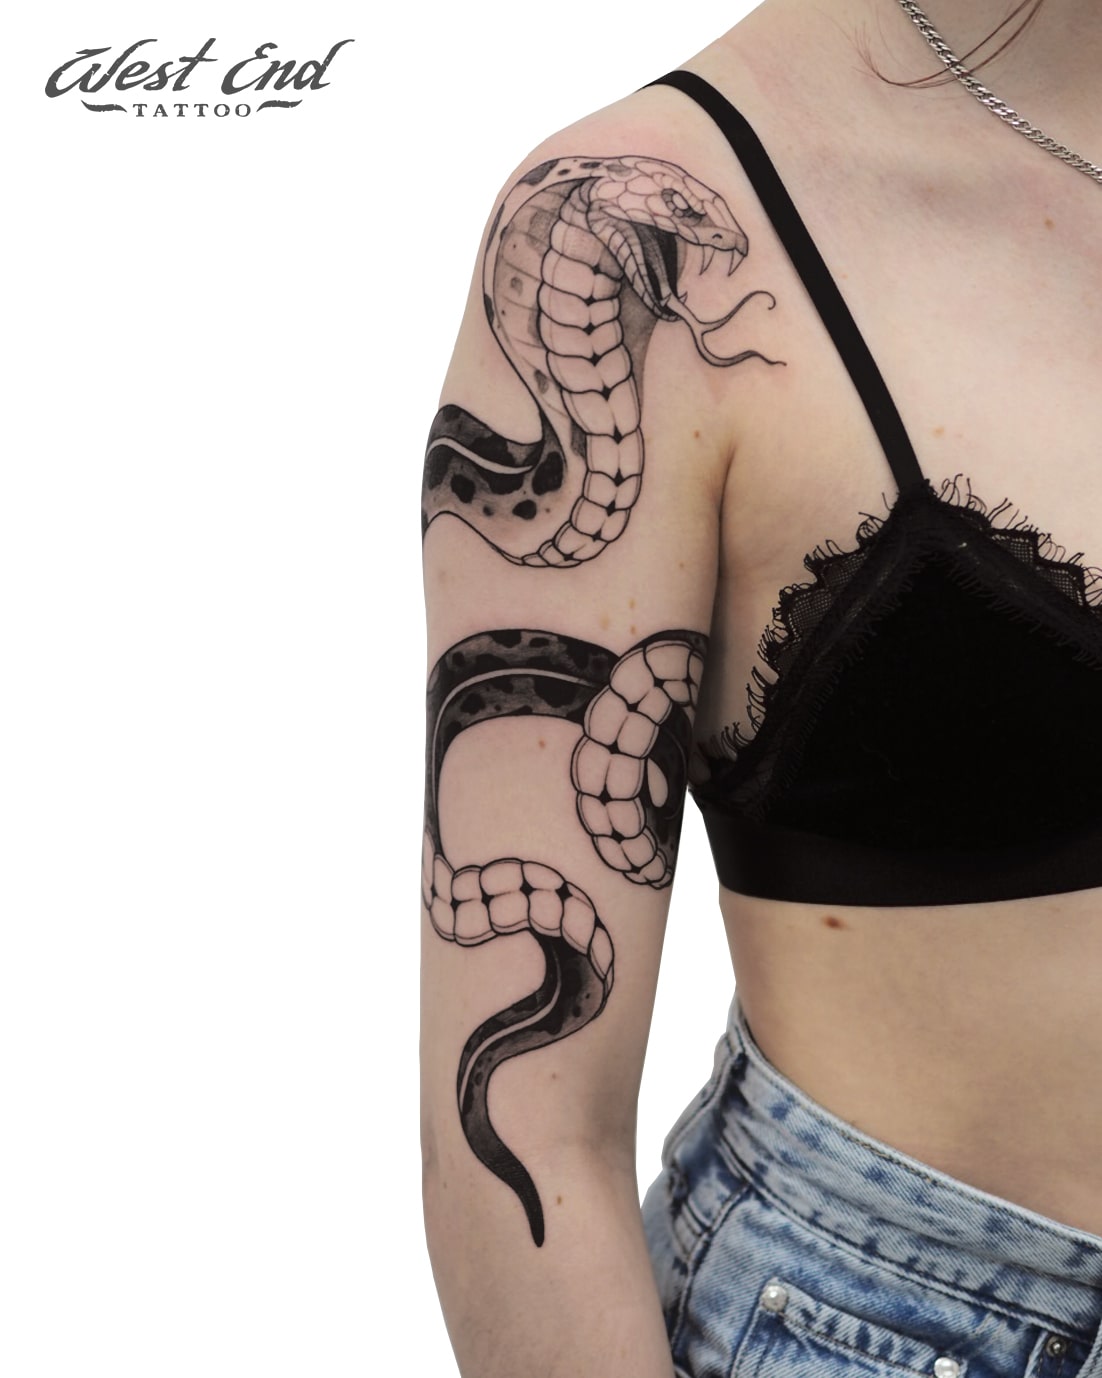 Татуировка змея на плече